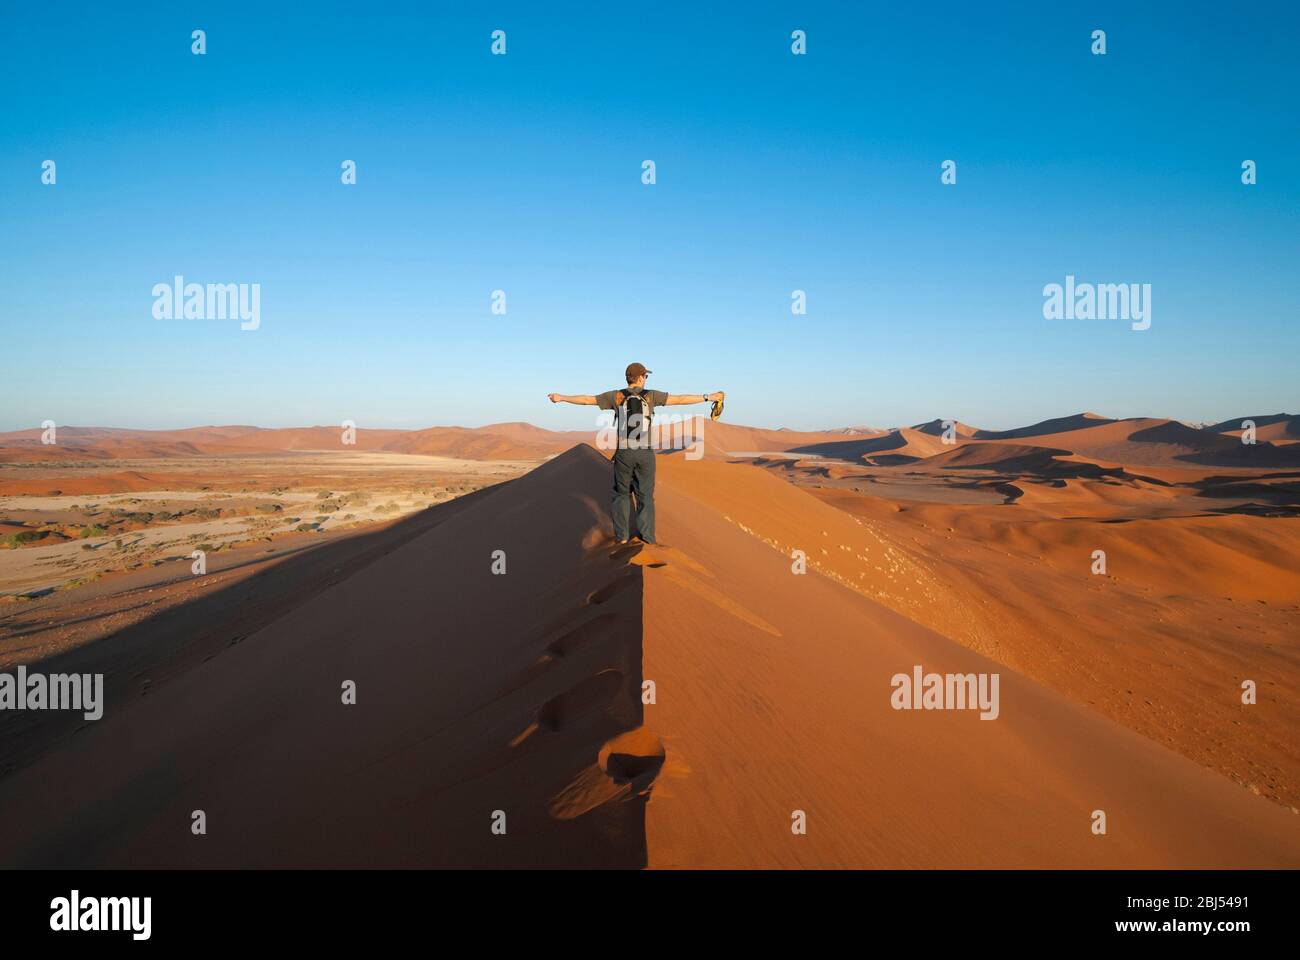 Ein einzelner Mann, der bei Sonnenuntergang in der Namid-Wüste in Sossusvlei, Namibia, Afrika, auf einer Sanddüne mit ausgestreckten Armen unterwegs ist. Querformat. Stockfoto